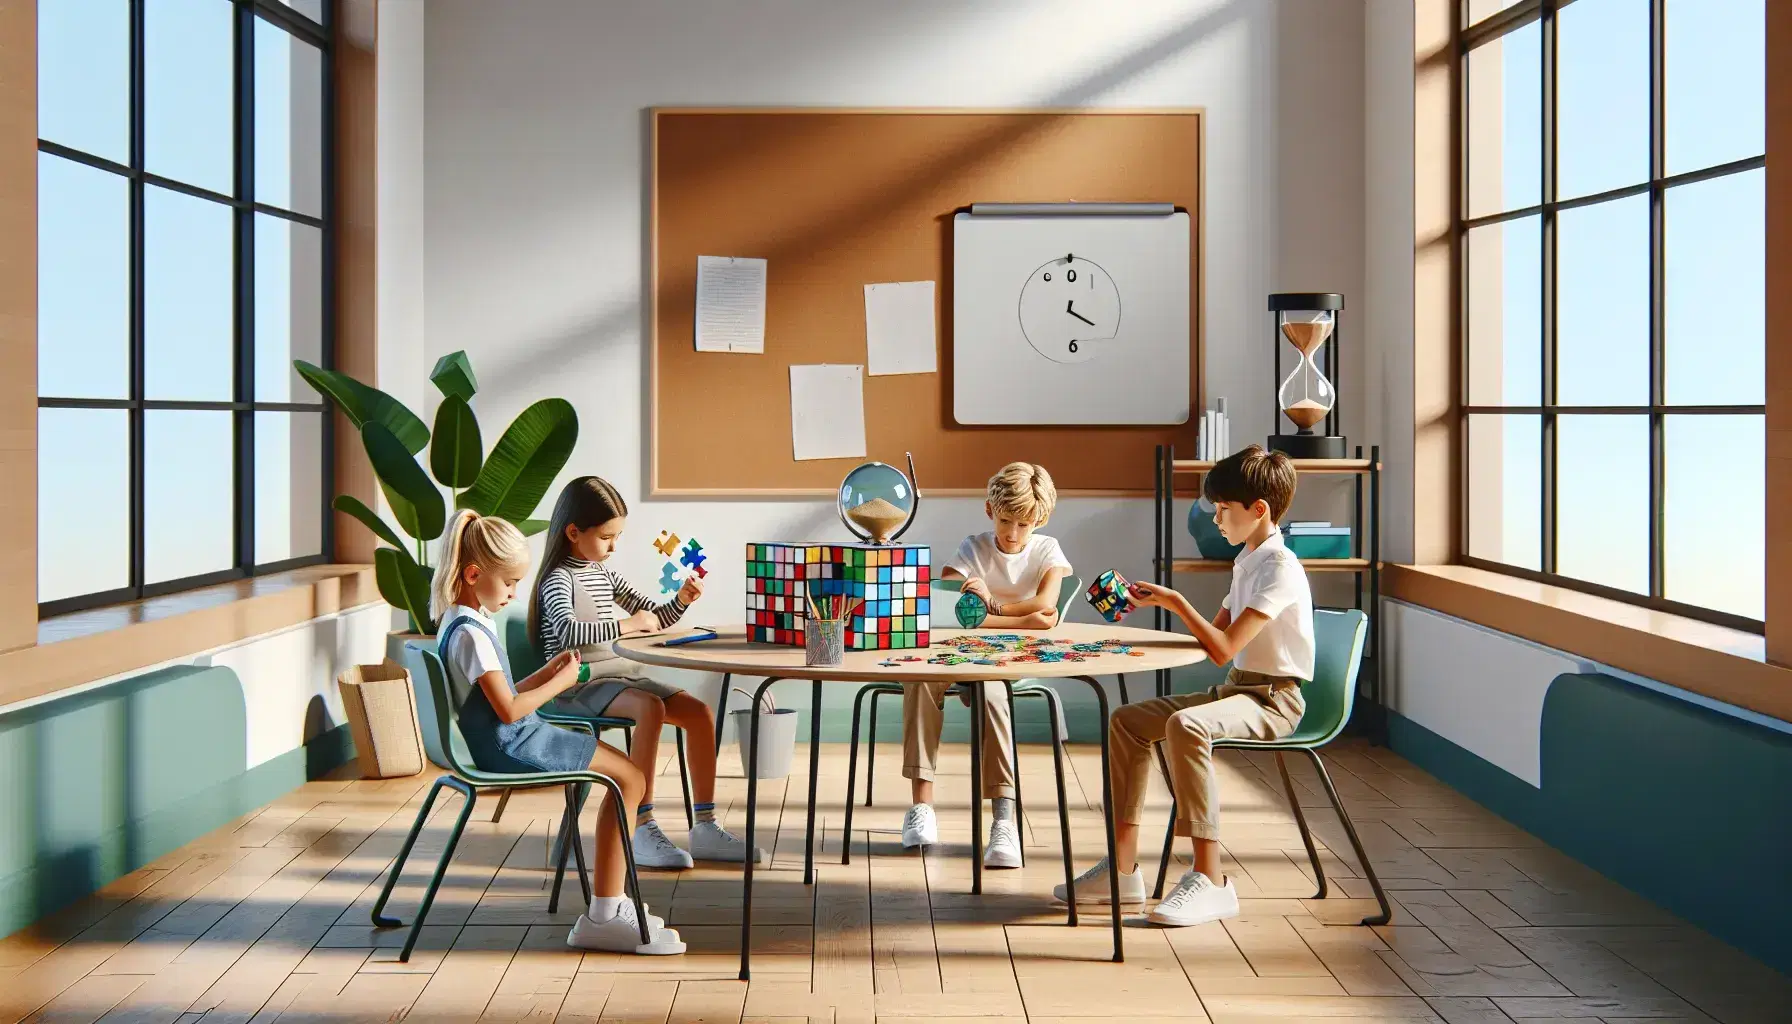 Aula escolar moderna con estudiantes de diversas edades enfocados en actividades educativas, incluyendo un puzzle, un cubo Rubik y un reloj de arena, bajo luz natural.